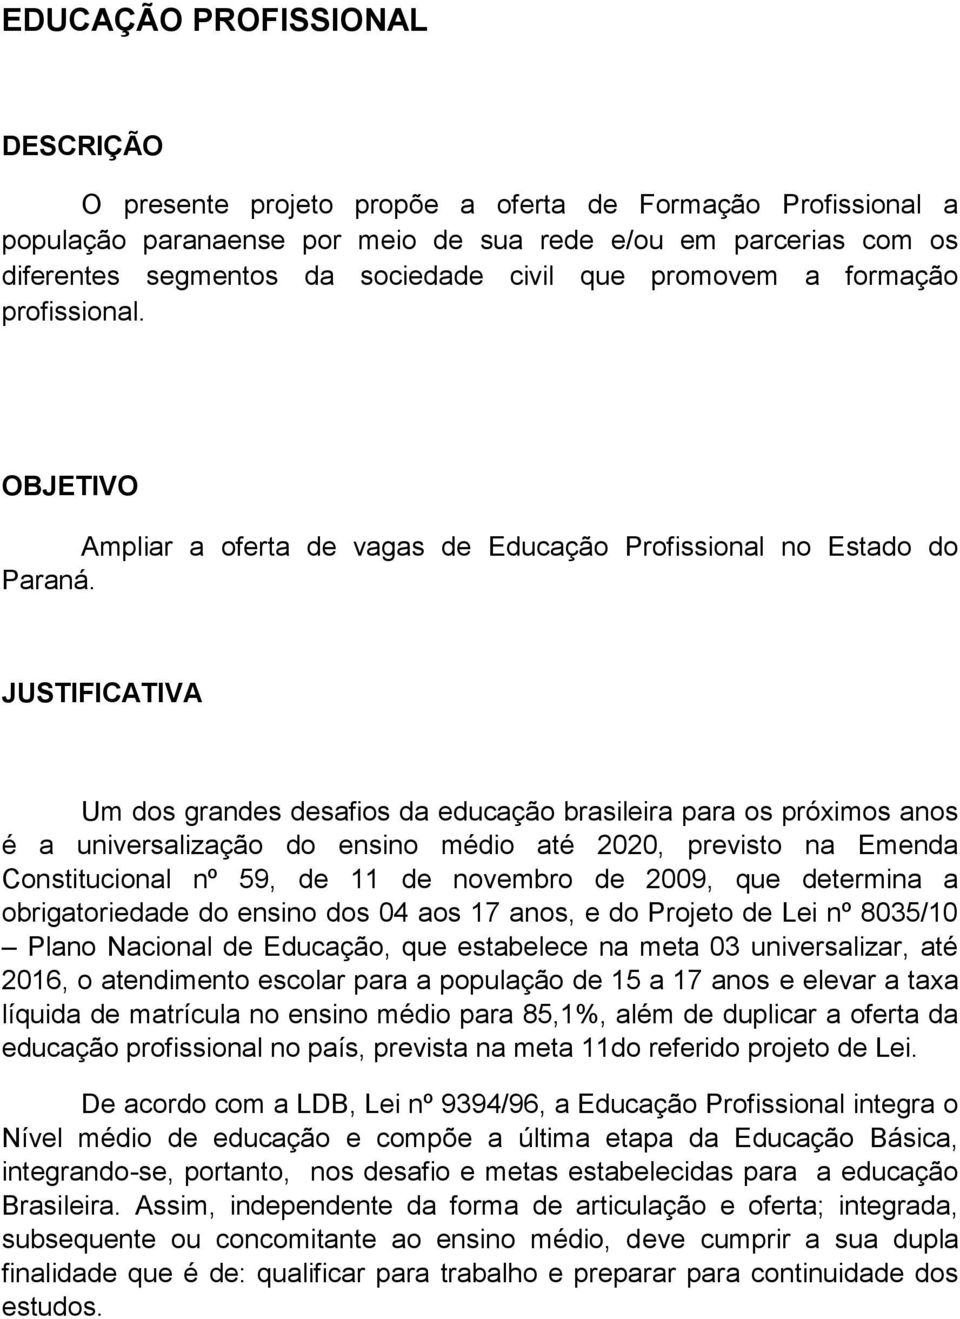 Um dos grandes desafios da educação brasileira para os próximos anos é a universalização do ensino médio até 2020, previsto na Emenda Constitucional nº 59, de 11 de novembro de 2009, que determina a